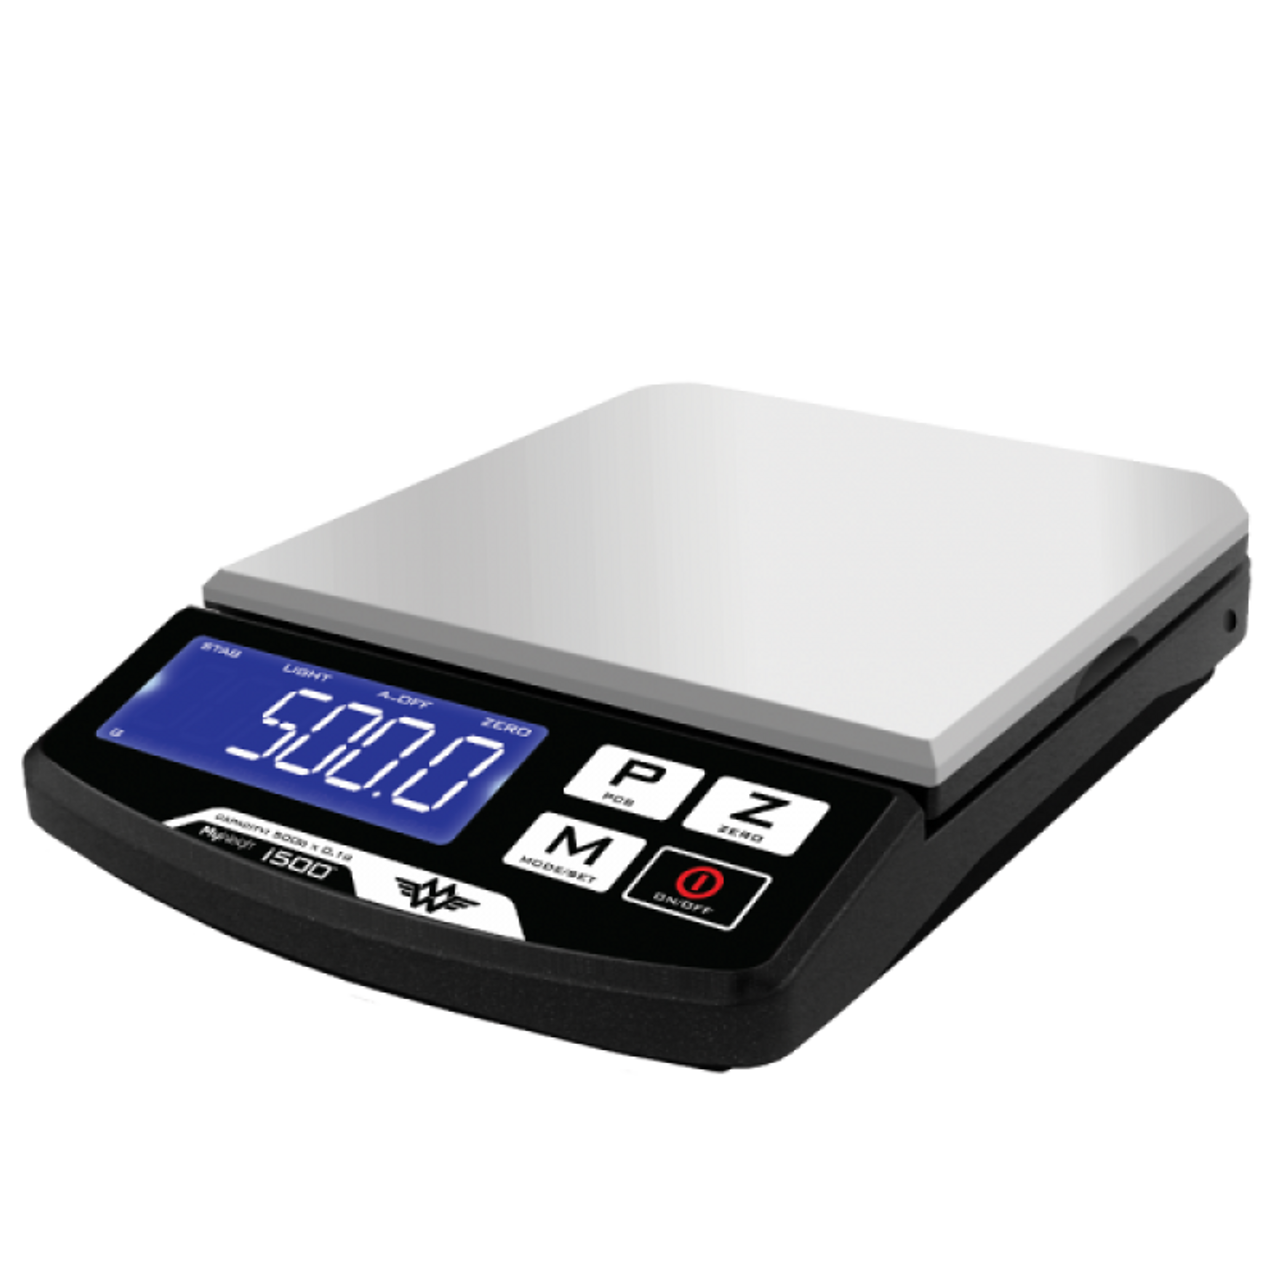 Весы 500 б. Scale_1200. Весы электронные professional Digital Table Top Scale 500g/0.01g. Весы компактные HT-500 (500*0,1г). Весы and 1200 i.